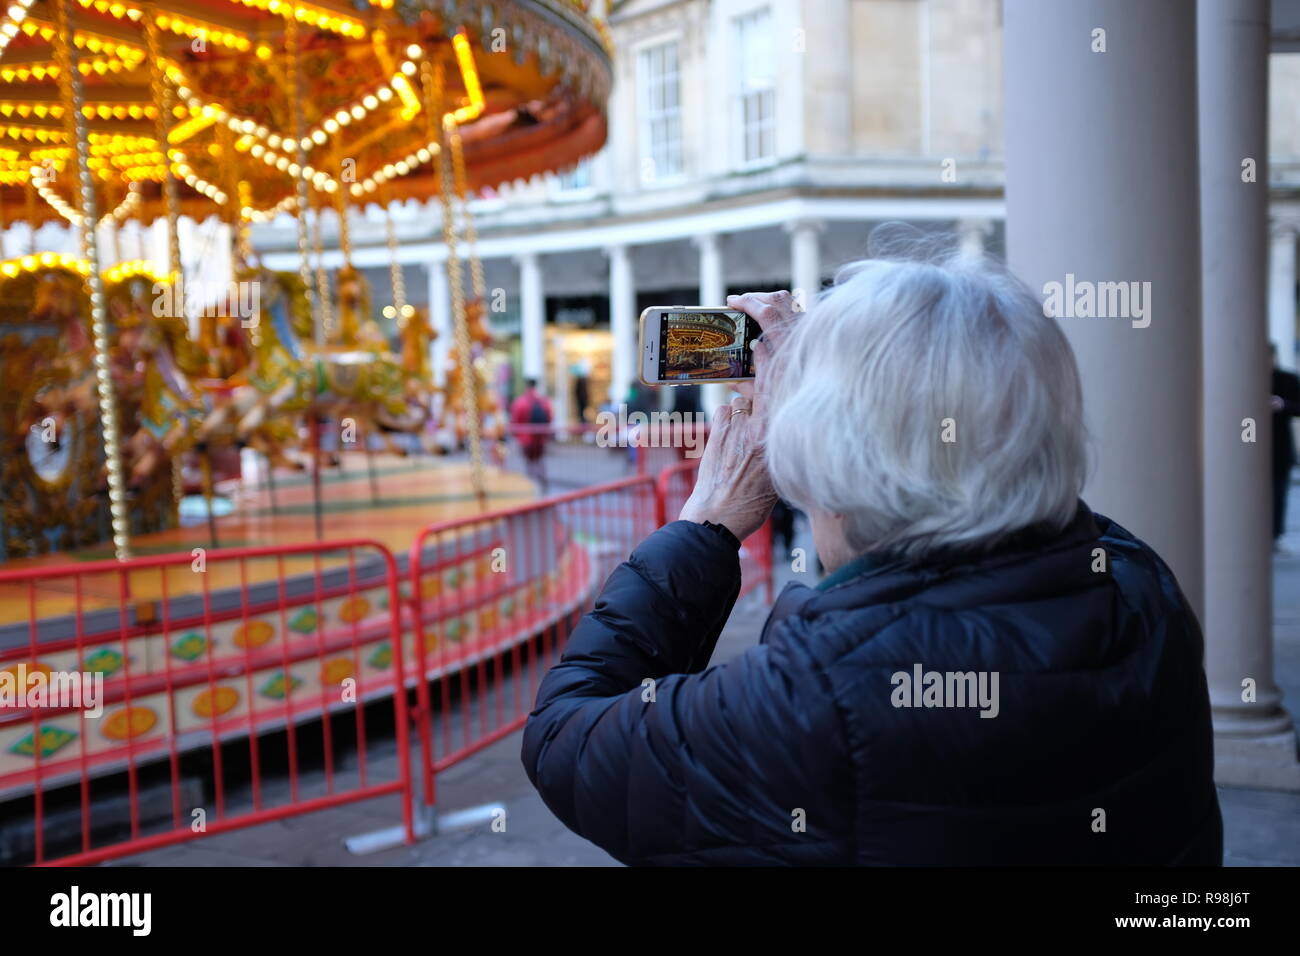 Reife Frau verwendet Smart Phone zu fotografieren Messegelände fahren. Weihnachtsmarkt in Bath, UK. Stockfoto